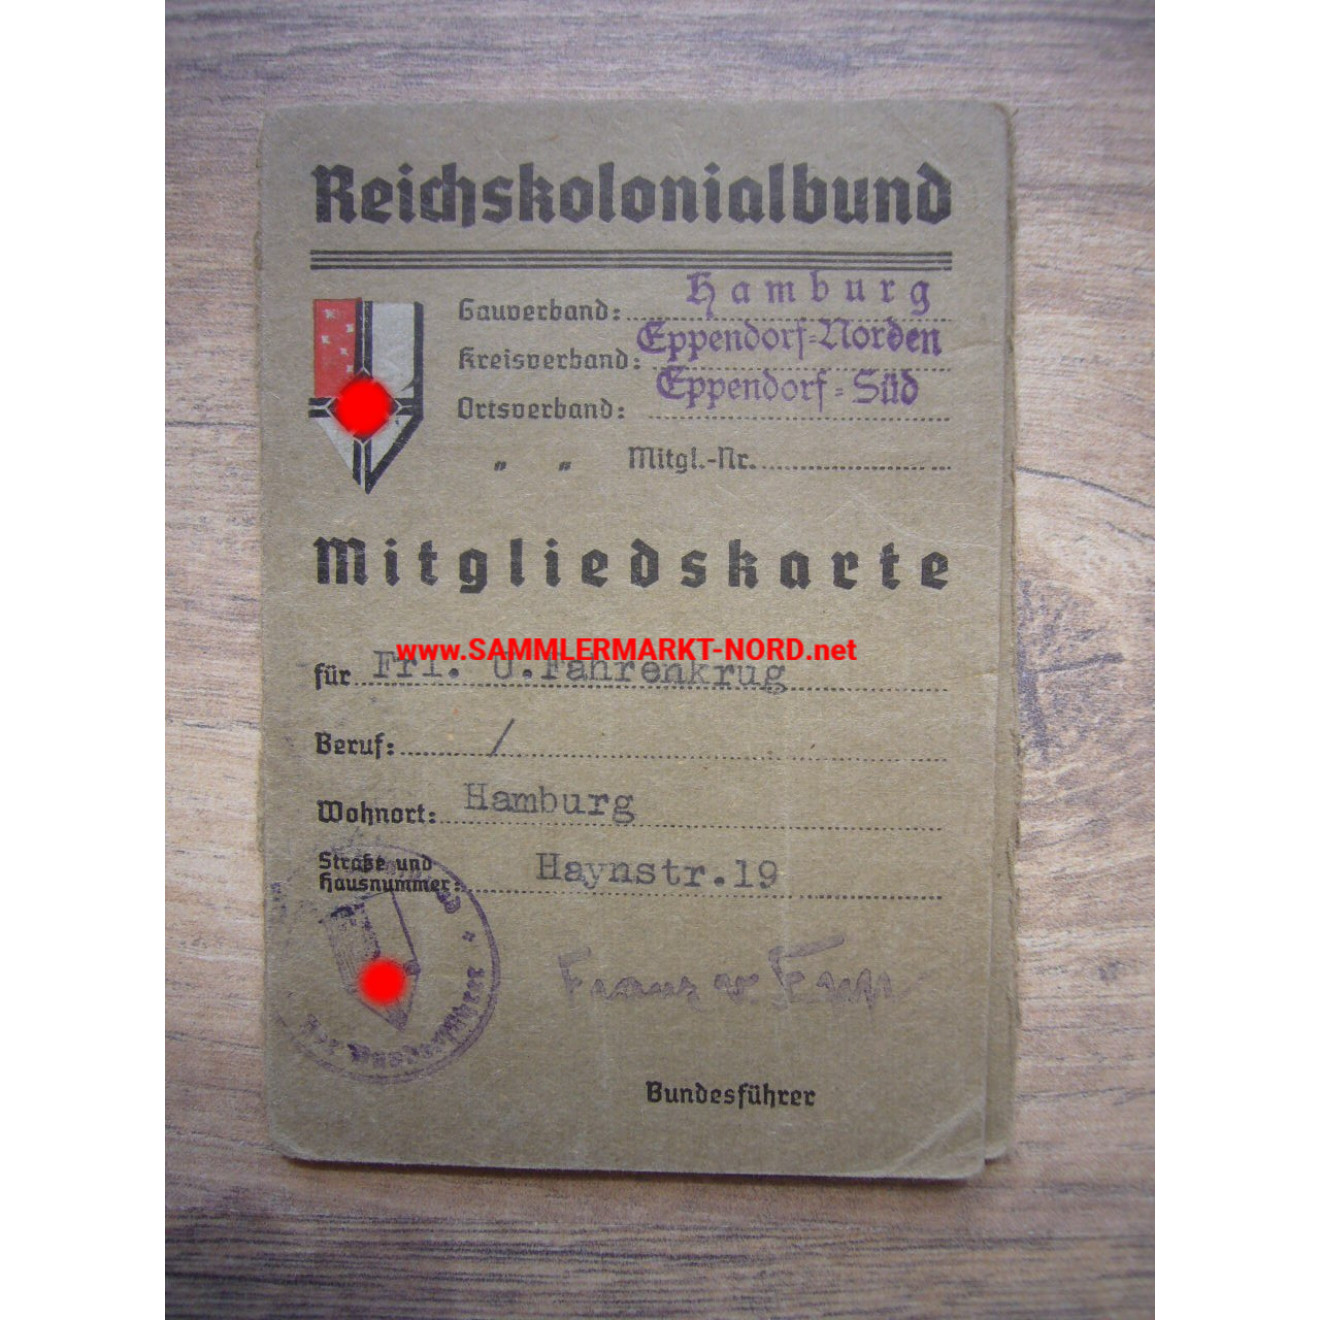 Reichskolonialbund - Mitgliedskarte